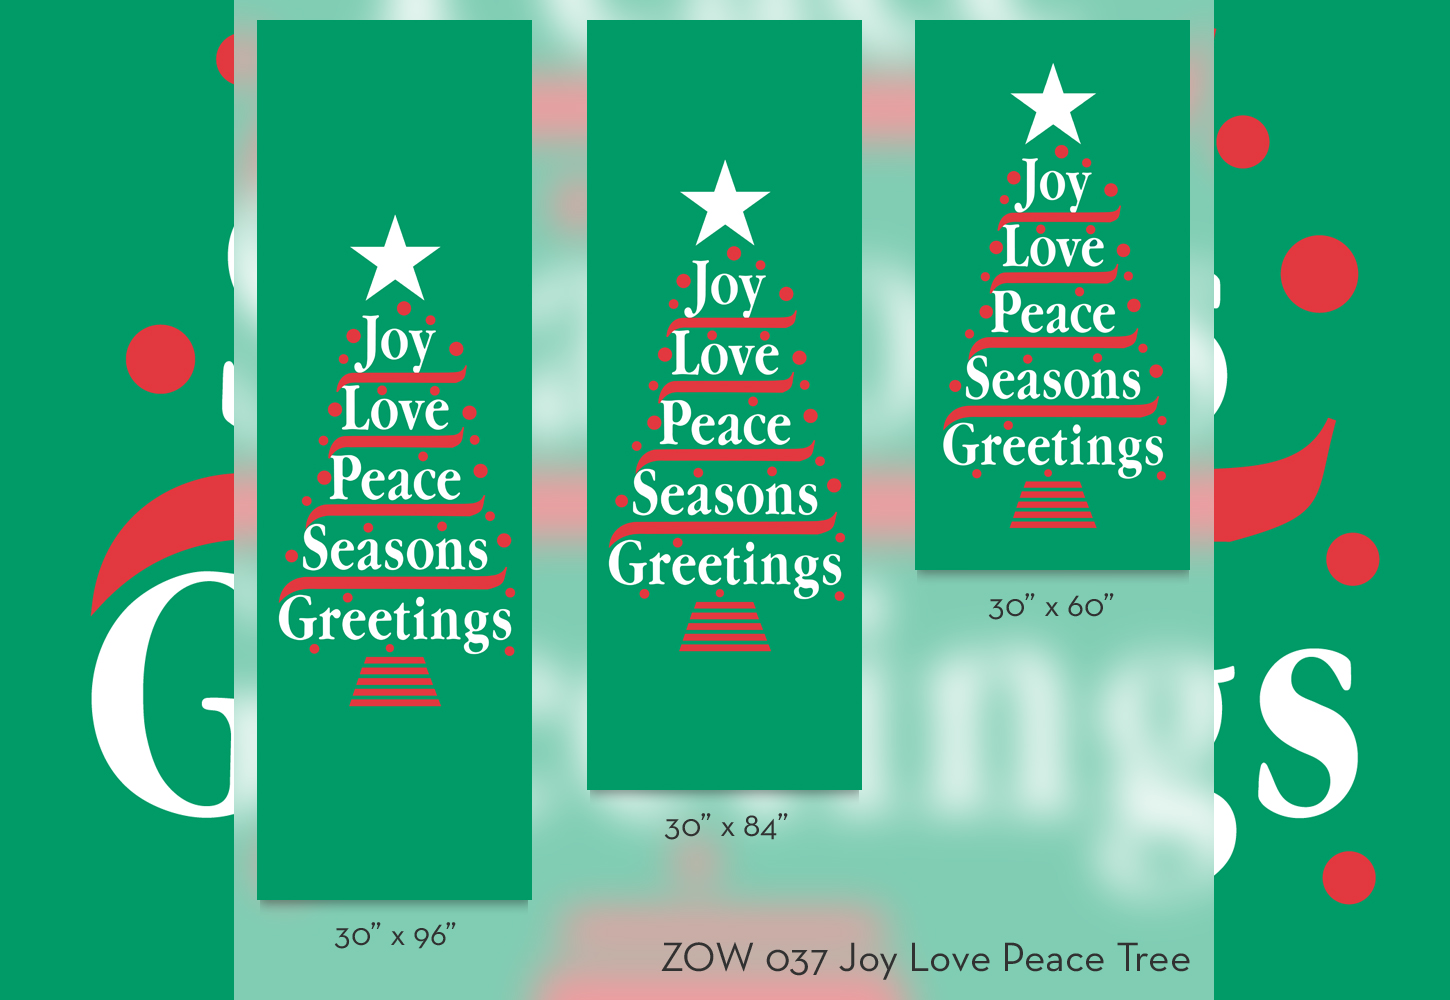 ZOW 037 Joy Love Peace Tree